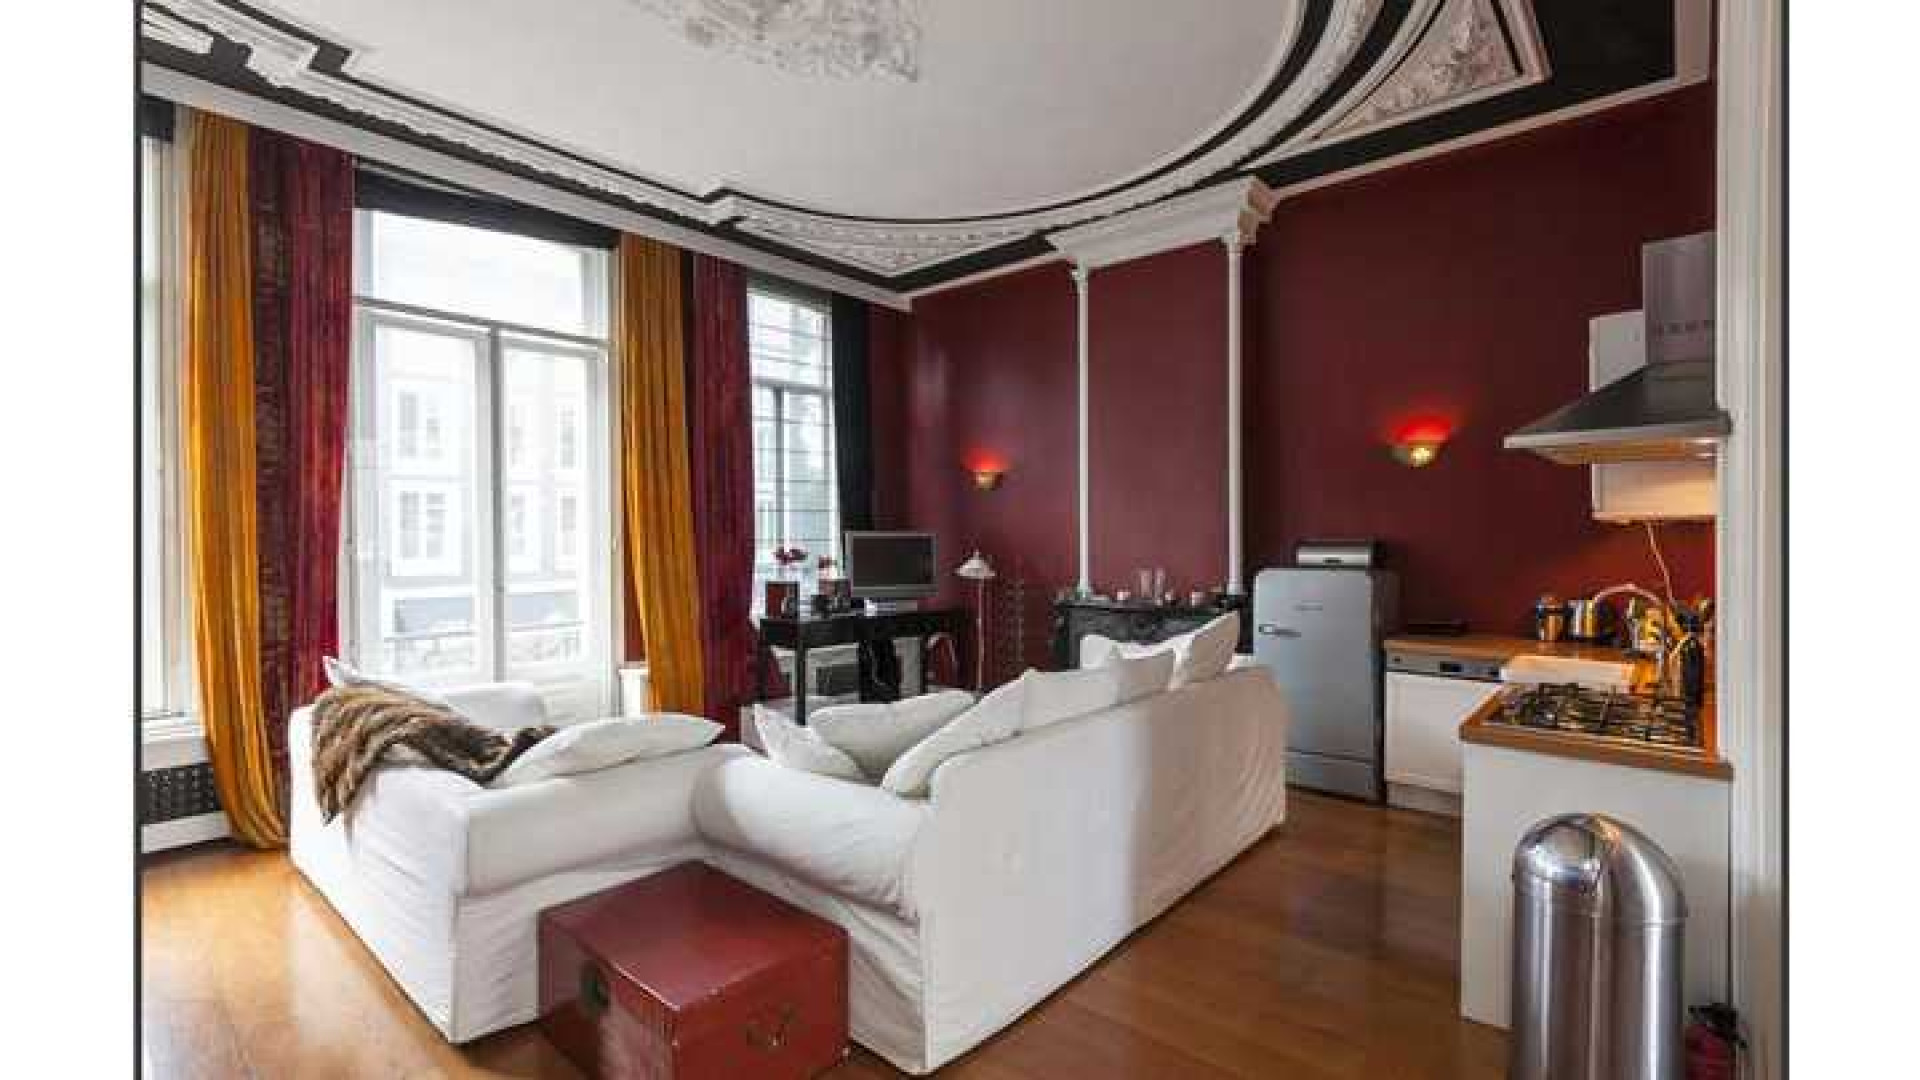 Trijnte Oosterhuis en haar ex zetten hun luxe Amsterdamse appartement te koop. Zie foto's 2